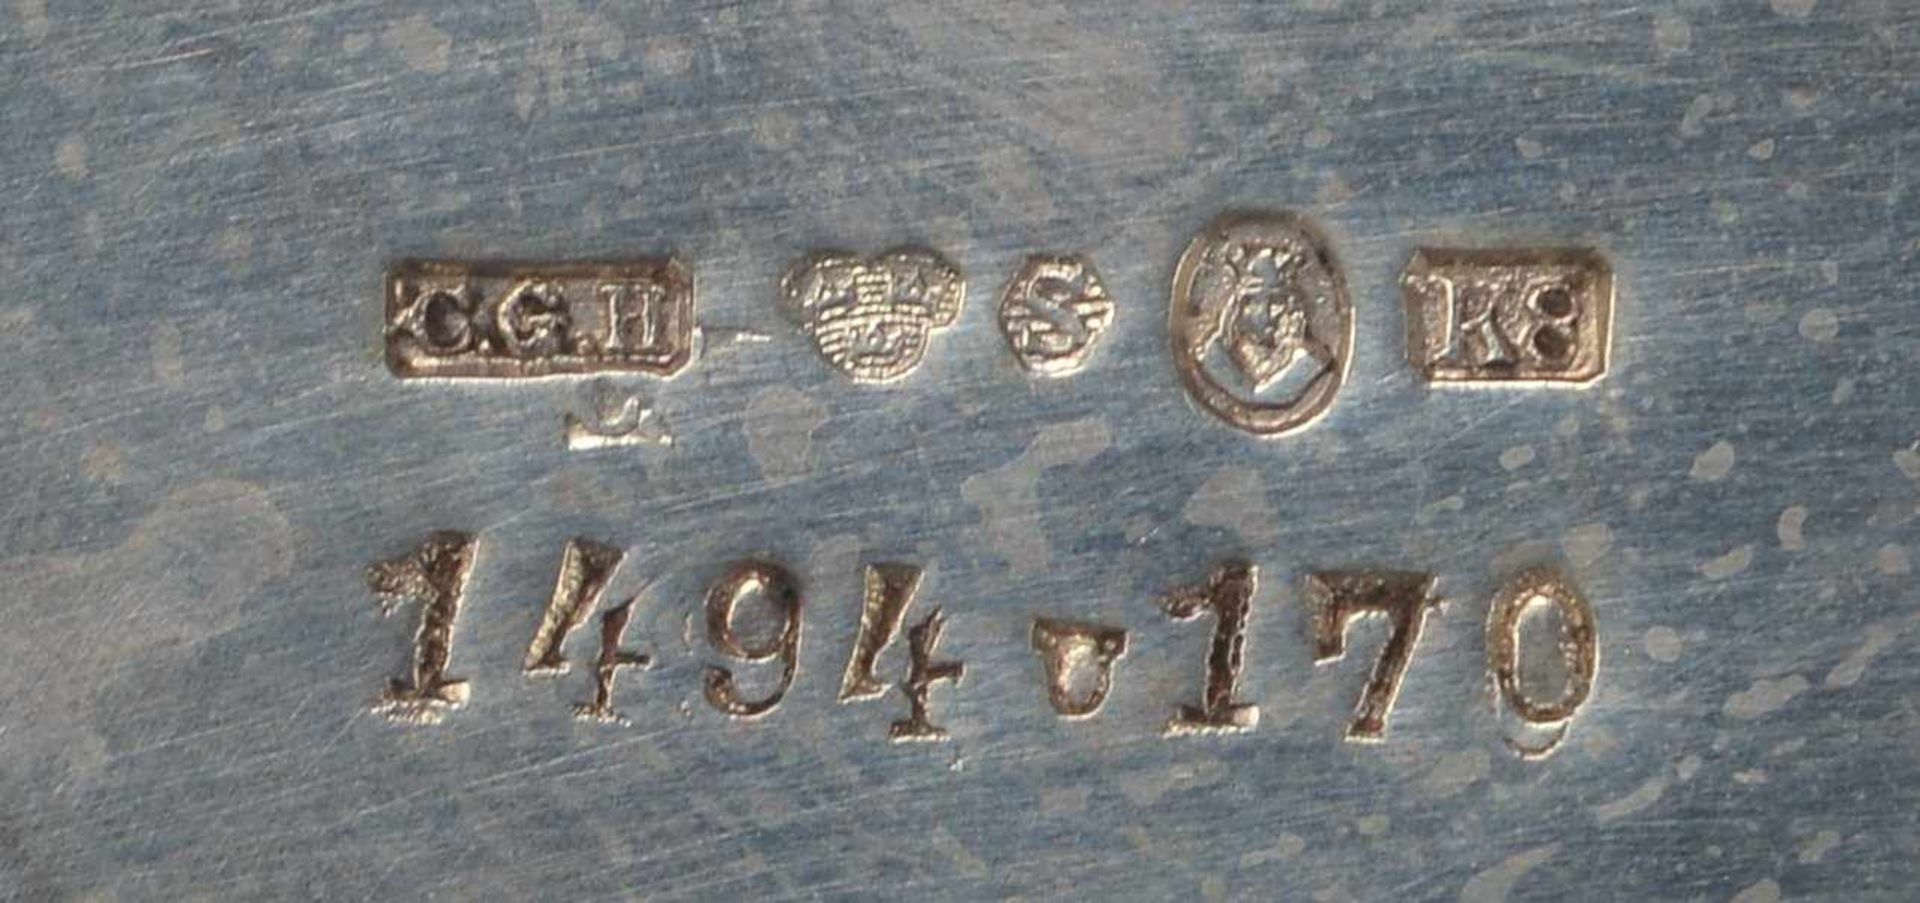 Schale (Schweden), 830 Silber, mehrfach punziert; Höhe 7 cm, Durchmesser Ø 16,5 cm, Gewicht 167 g - Bild 3 aus 3